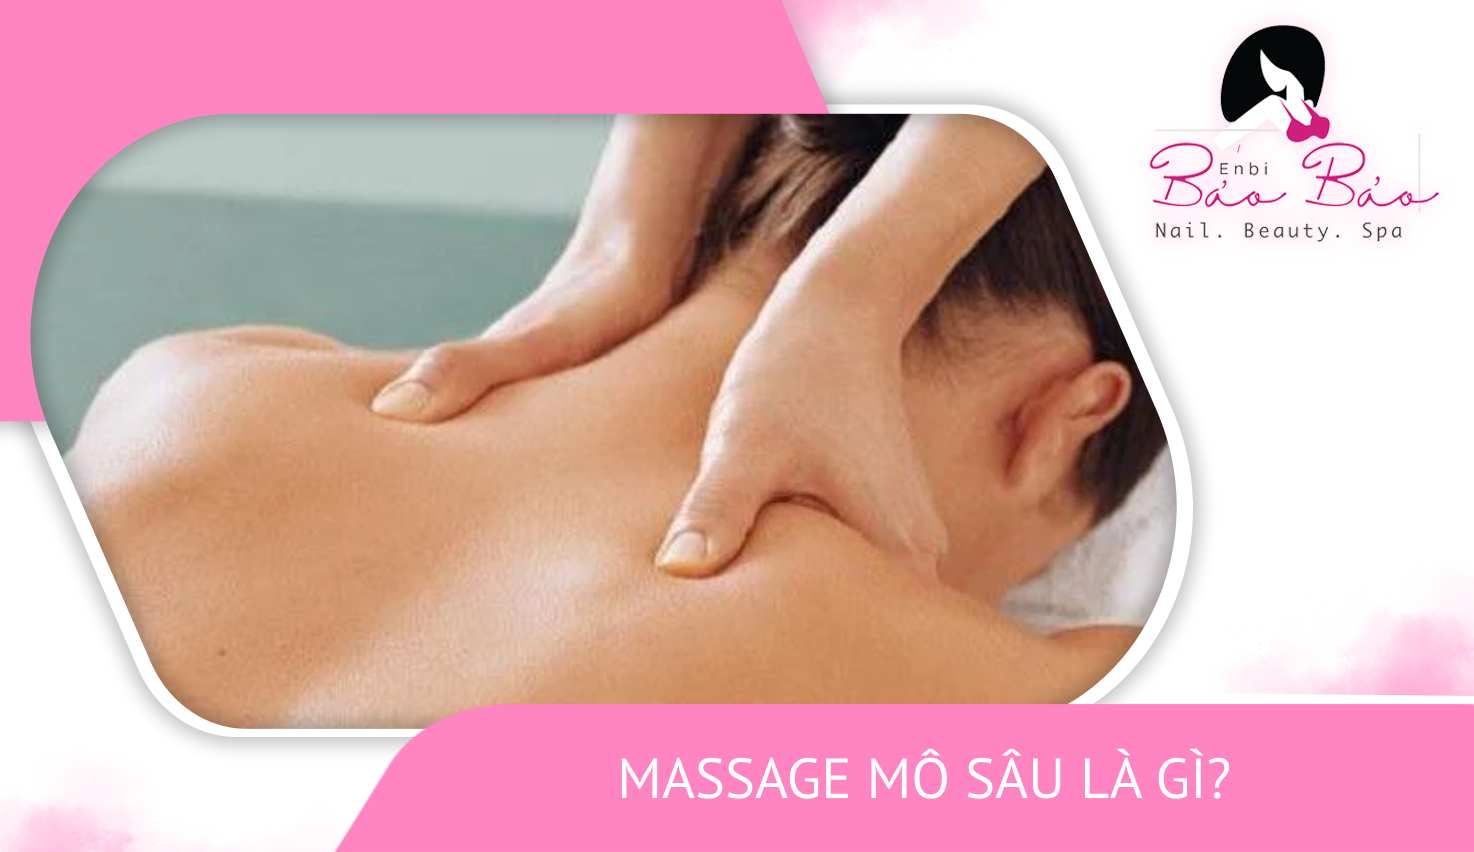 Massage mô sâu và những lợi ích cho sức khỏe enbi spa